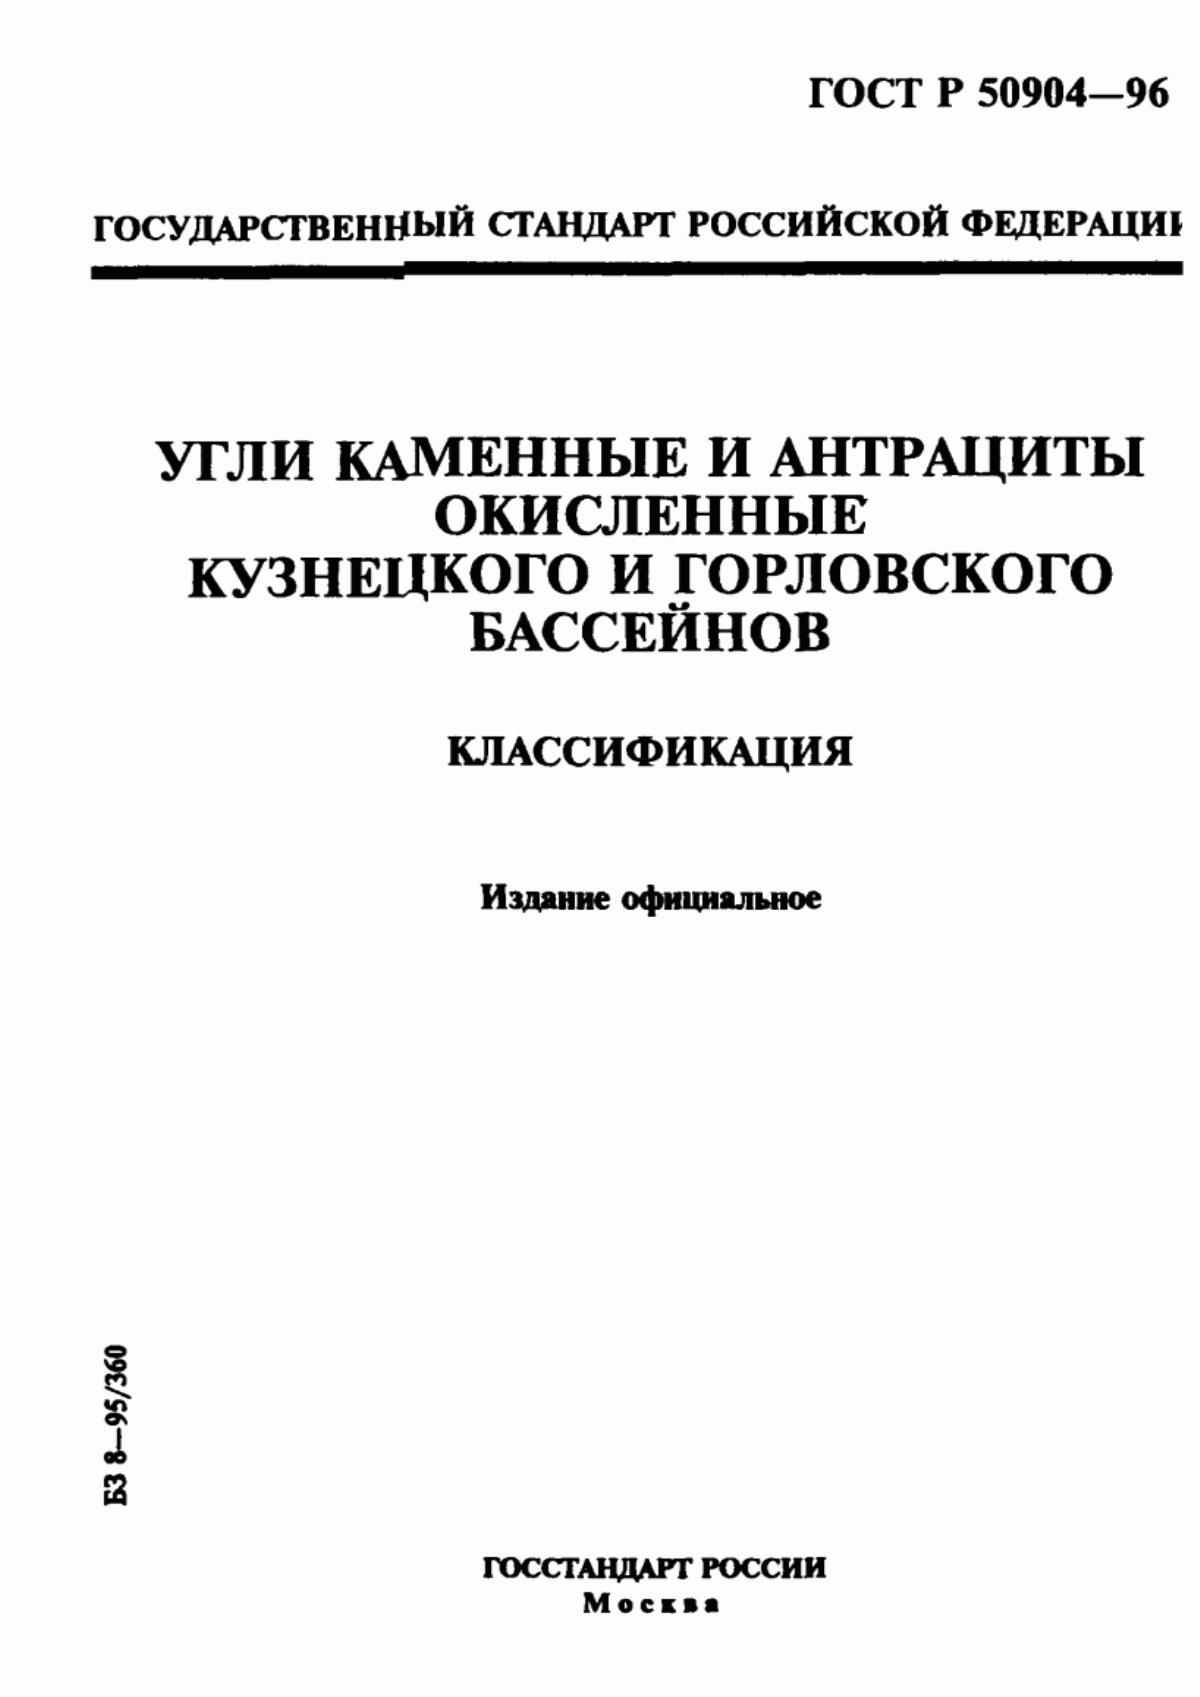 ГОСТ Р 50904-96 Угли каменные и антрациты окисленные Кузнецкого и Горловского бассейнов. Классификация